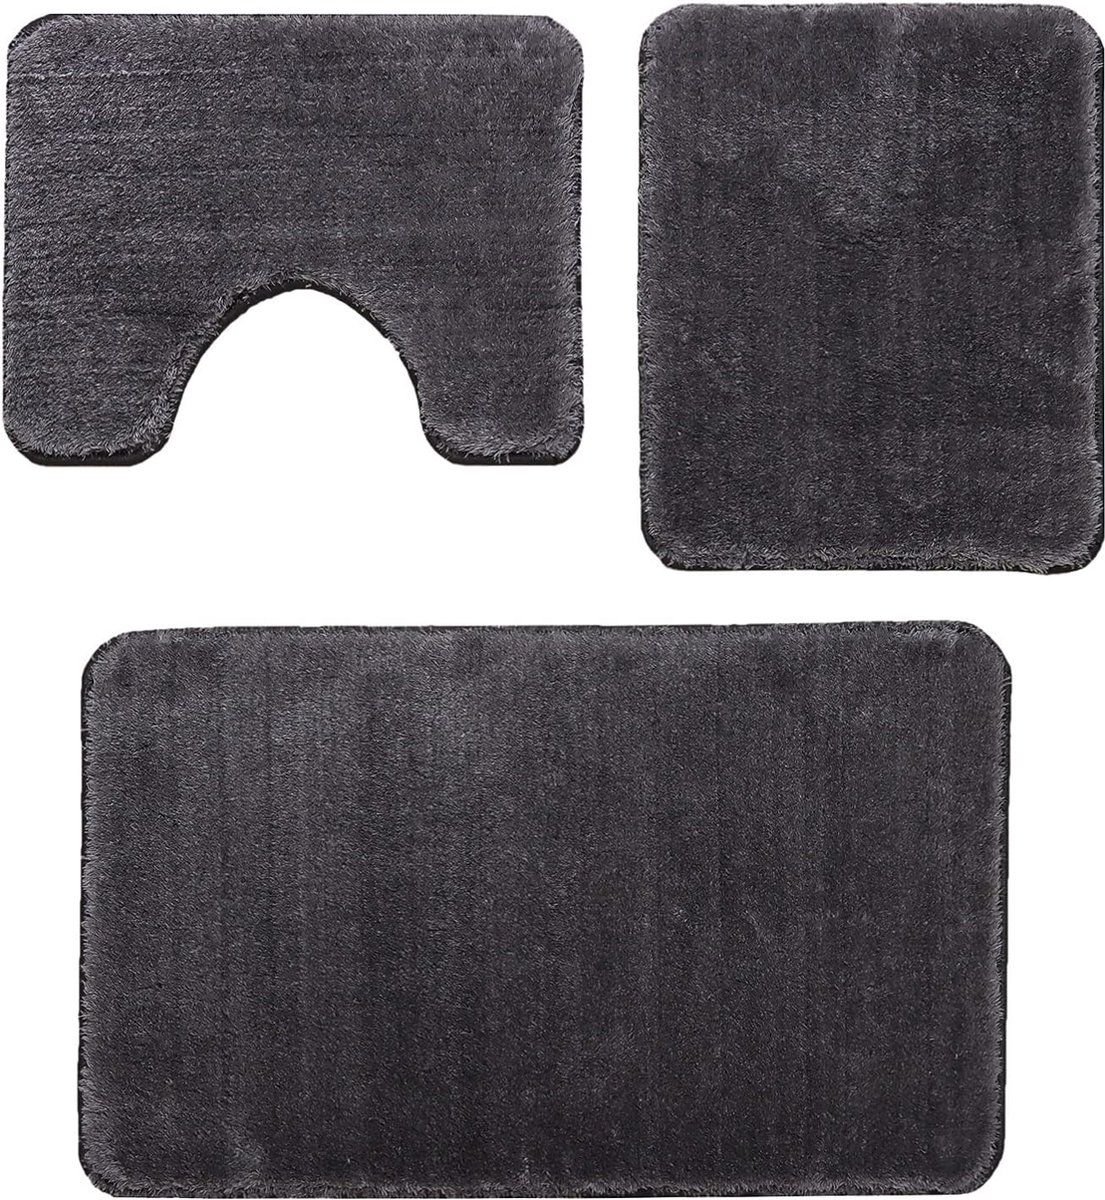 Badmatset, 3-delig, badkamertapijt, antislip, machinewasbaar 80 x 50 cm, badmat + 50 x 40 wc-mat, absorberend wc-tapijt (antraciet)